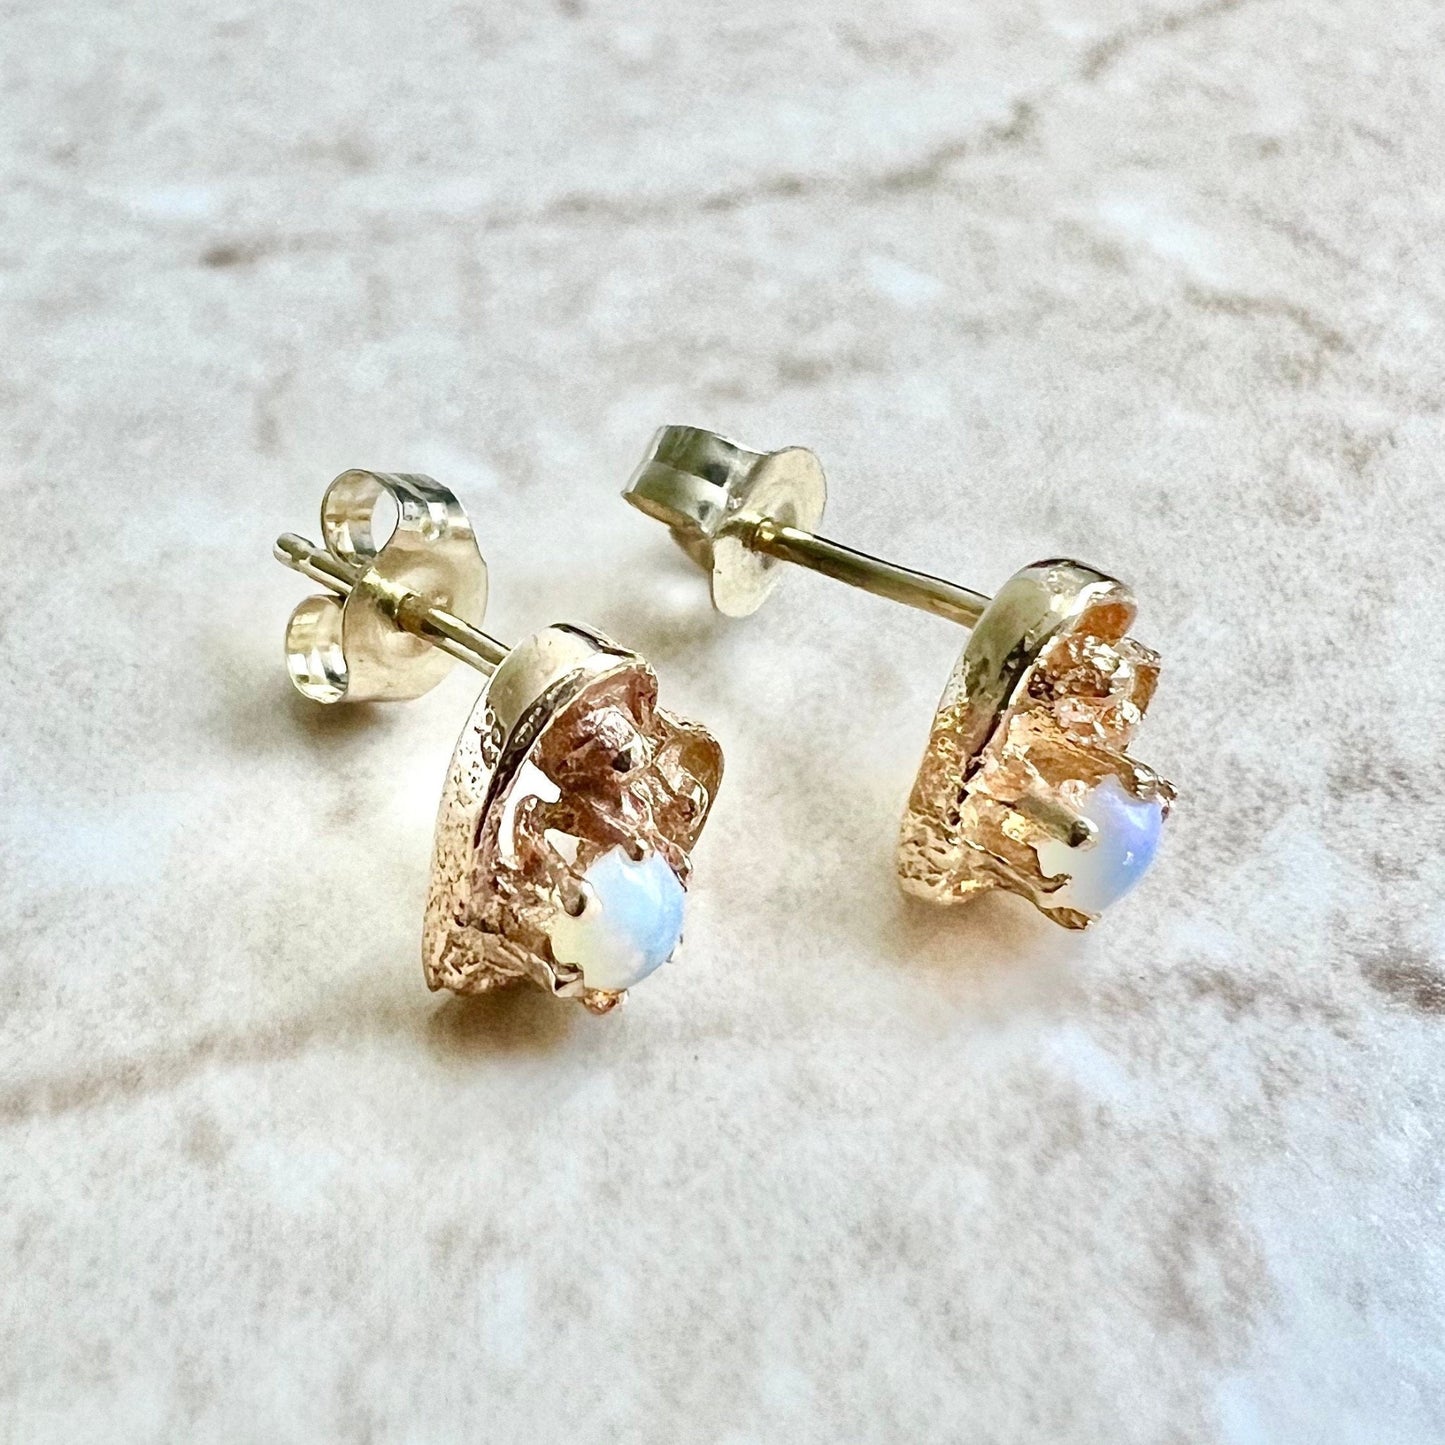 10K Opal Stud Earrings - Yellow Gold Opal Earrings - Opal Jewelry - Opal Heart Earrings - October Birthstone Earrings - Best Gifts For Her